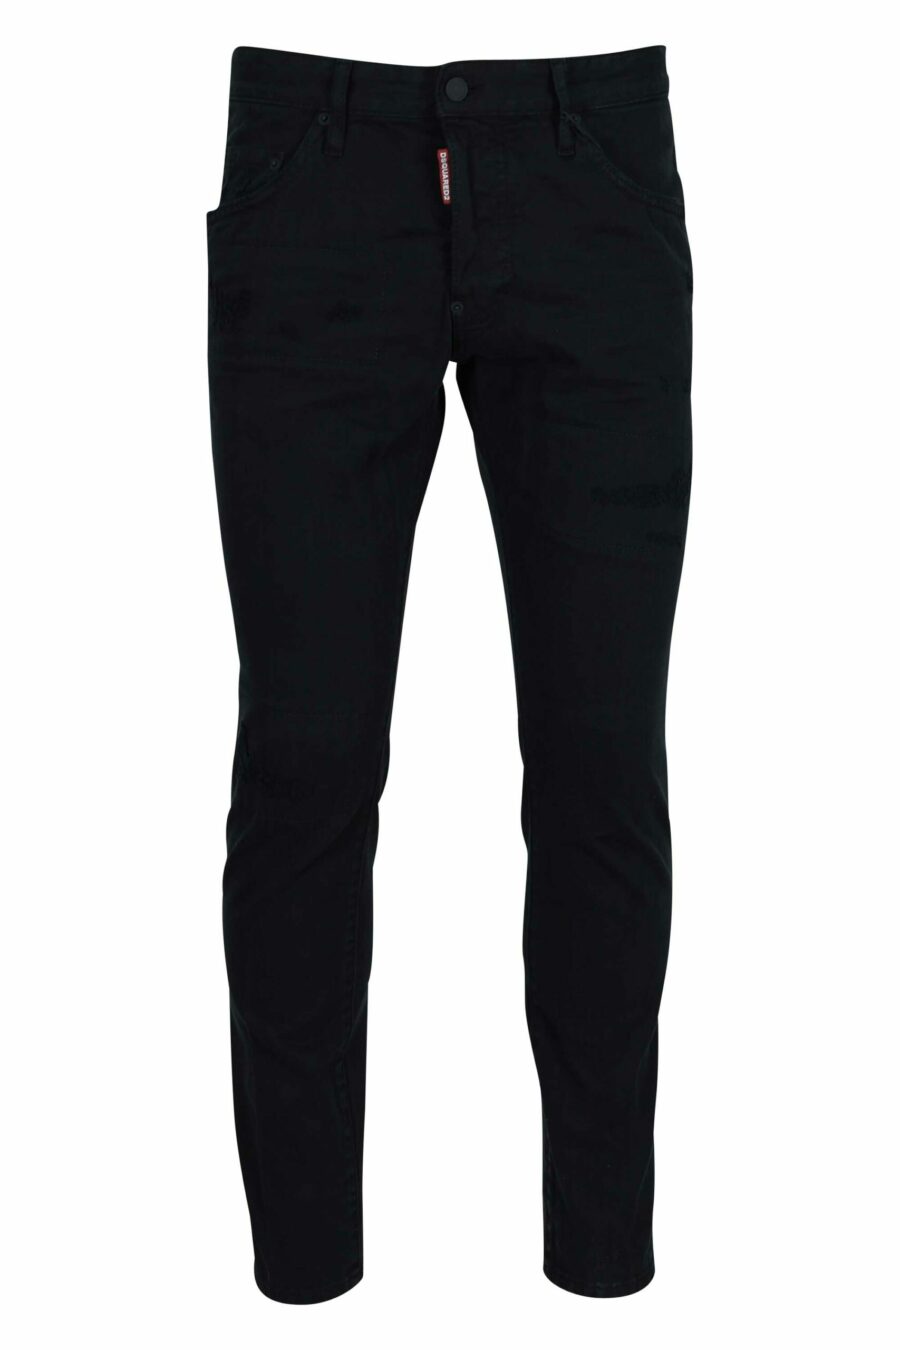 Jeans noirs "skater jean" avec logo - 8054148472320 échelonné